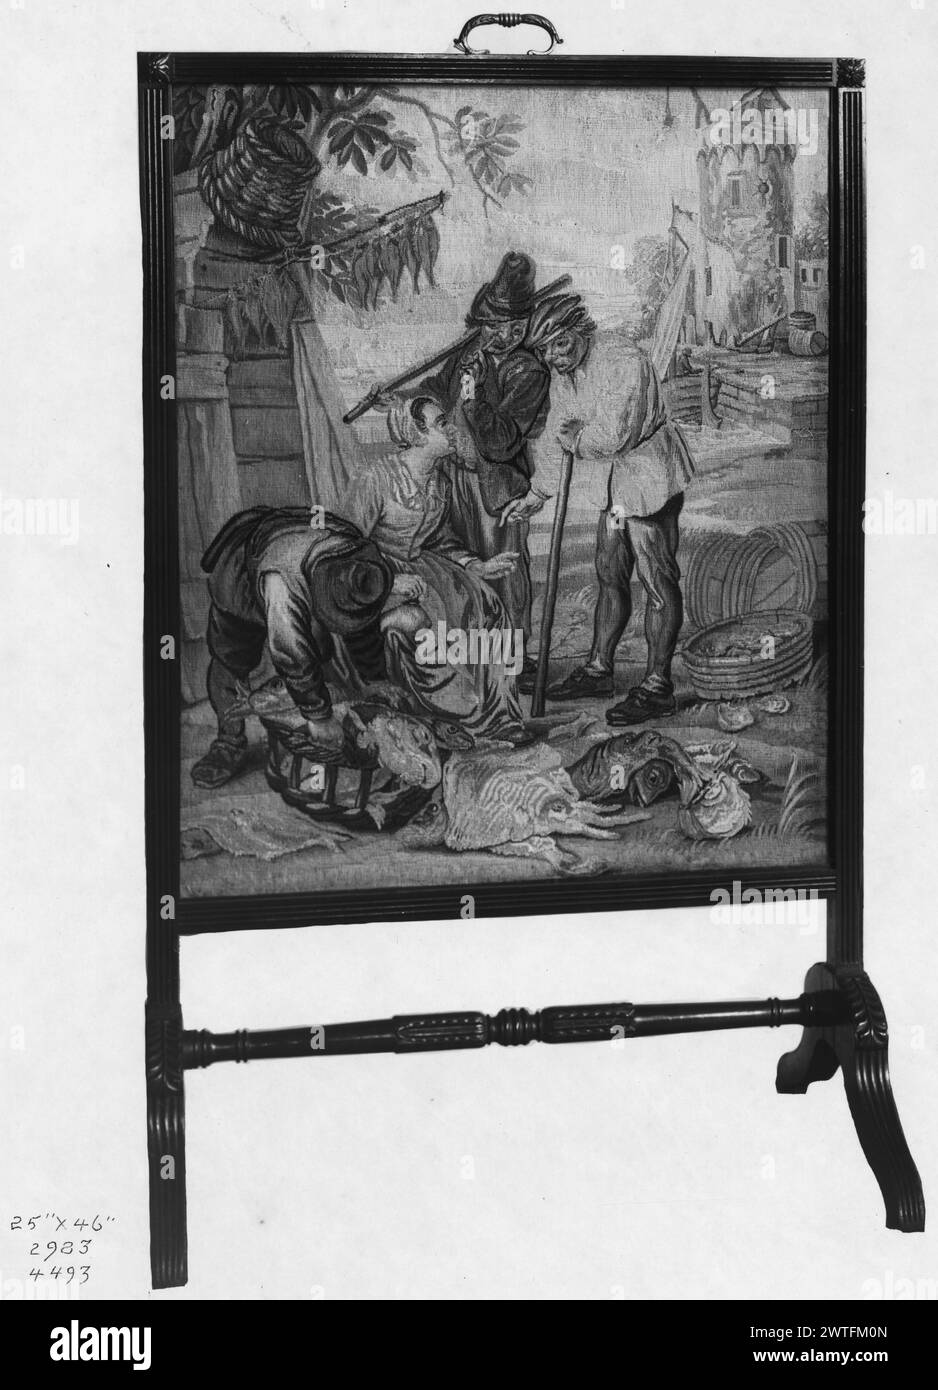 Banchina di pesce. Teniers, David II (fiammingo, 1610-1690) (disegnato dopo) [pittore] c. 1675-1775 arazzi dimensioni: H 46' x W 25' arazzo materiali/tecniche: Sconosciuta Cultura: Flemish Weaving Center: Bruxelles storia di proprietà: French & Co. Acquistato H. S. De Souhami, ricevuto 11/9/1917; venduto a J. S. Cosden 1/7/1922. Donna seduta circondata da un gruppo di 3 uomini e cesti di pesci (centro, primo piano); banchina e torre (centro, sfondo) arazzo è incorniciato. Questo pezzo mostra somiglianze con le tessiture della fine del XVII-XVIII secolo, ma ci sono variazioni significative nei dettagli e nella scala [= potrebbe essere moderno]. Vedere Foto Stock